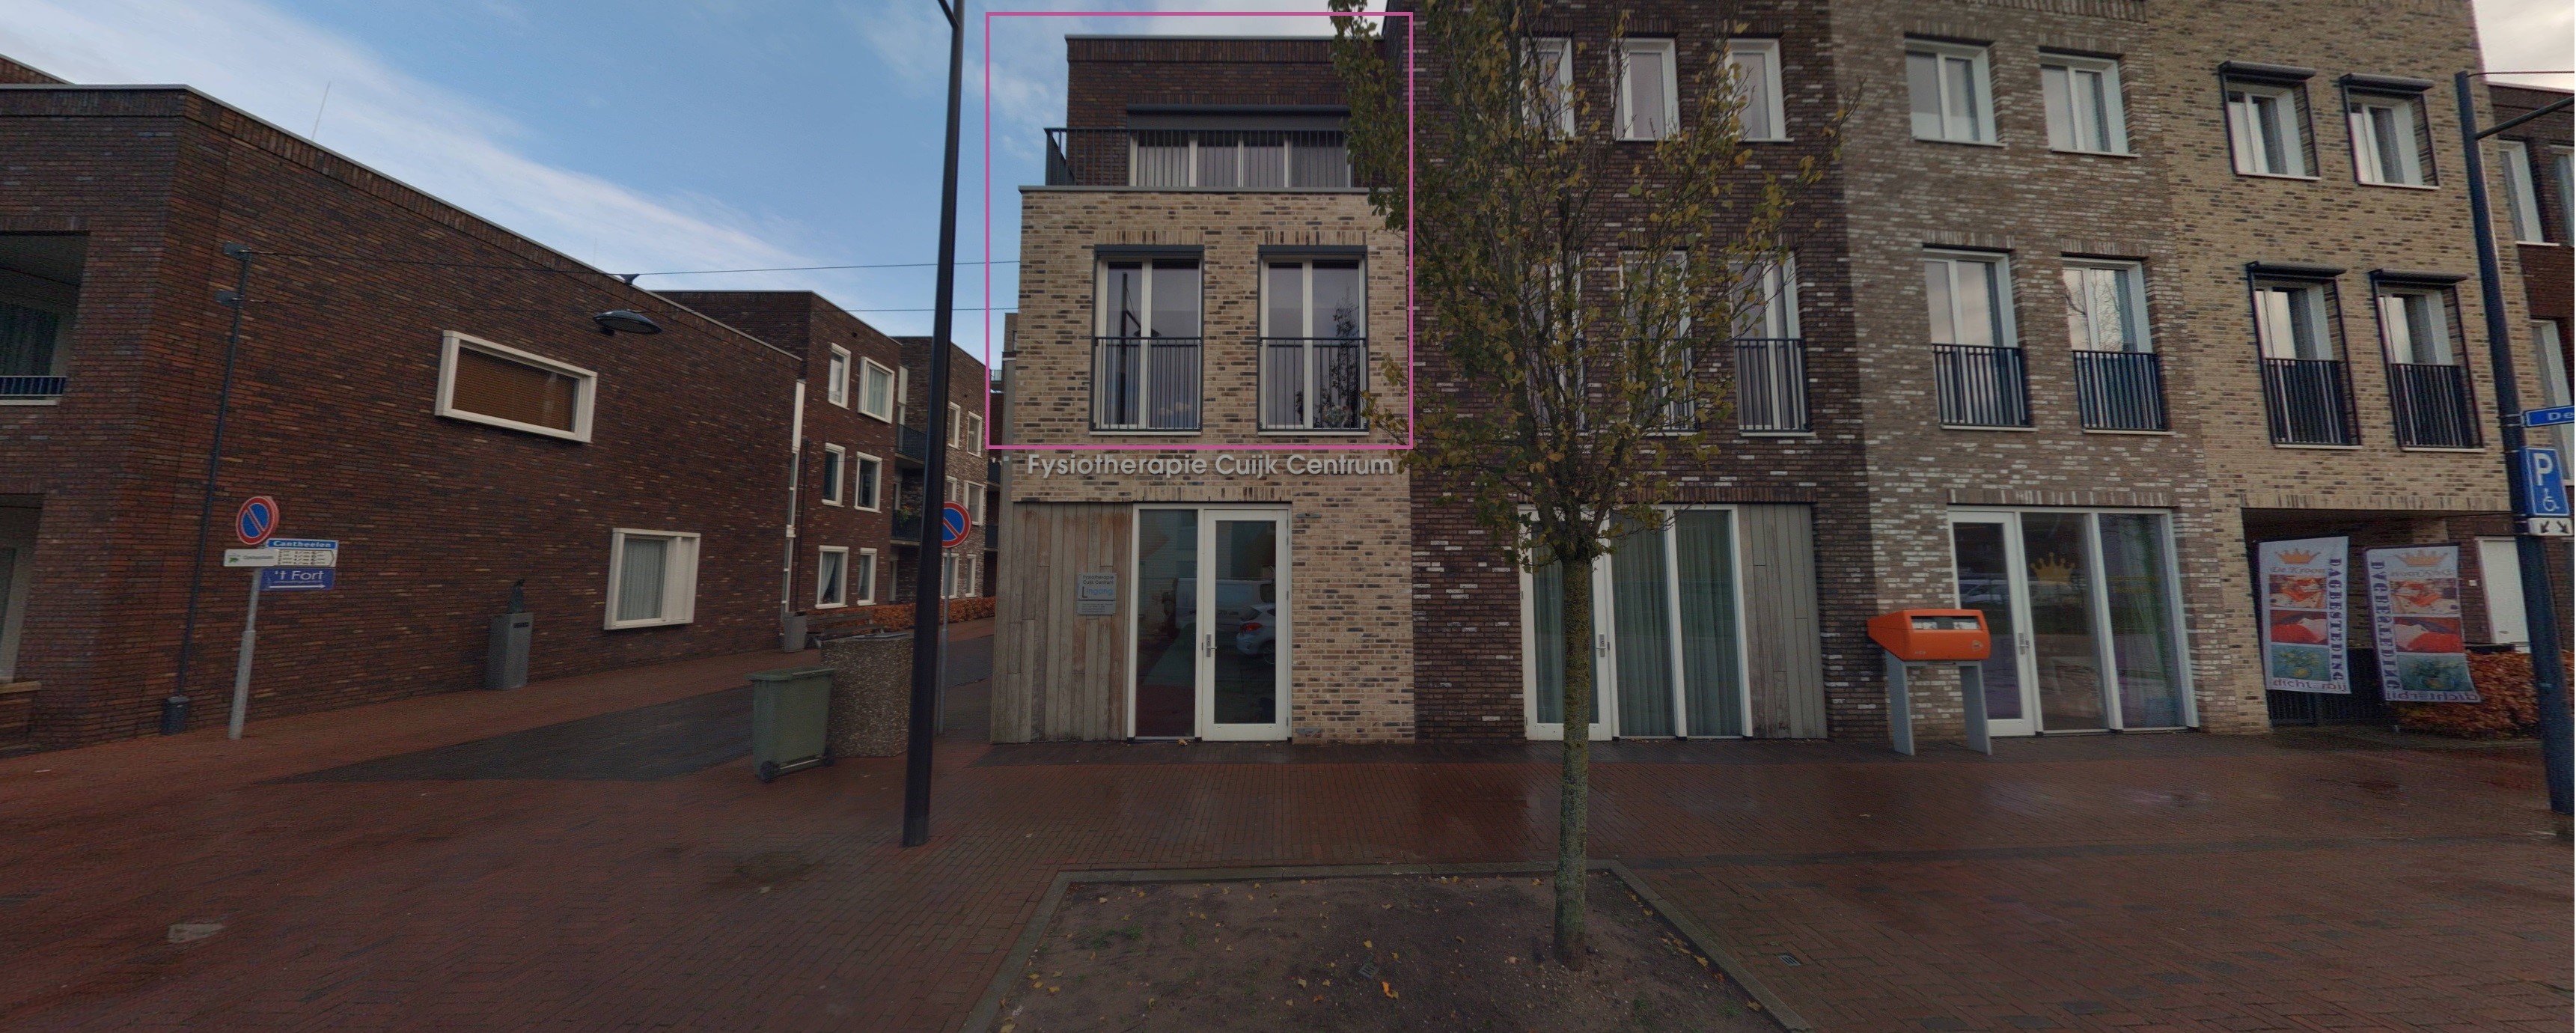 Cantheelen 6, 5431 DP Cuijk, Nederland